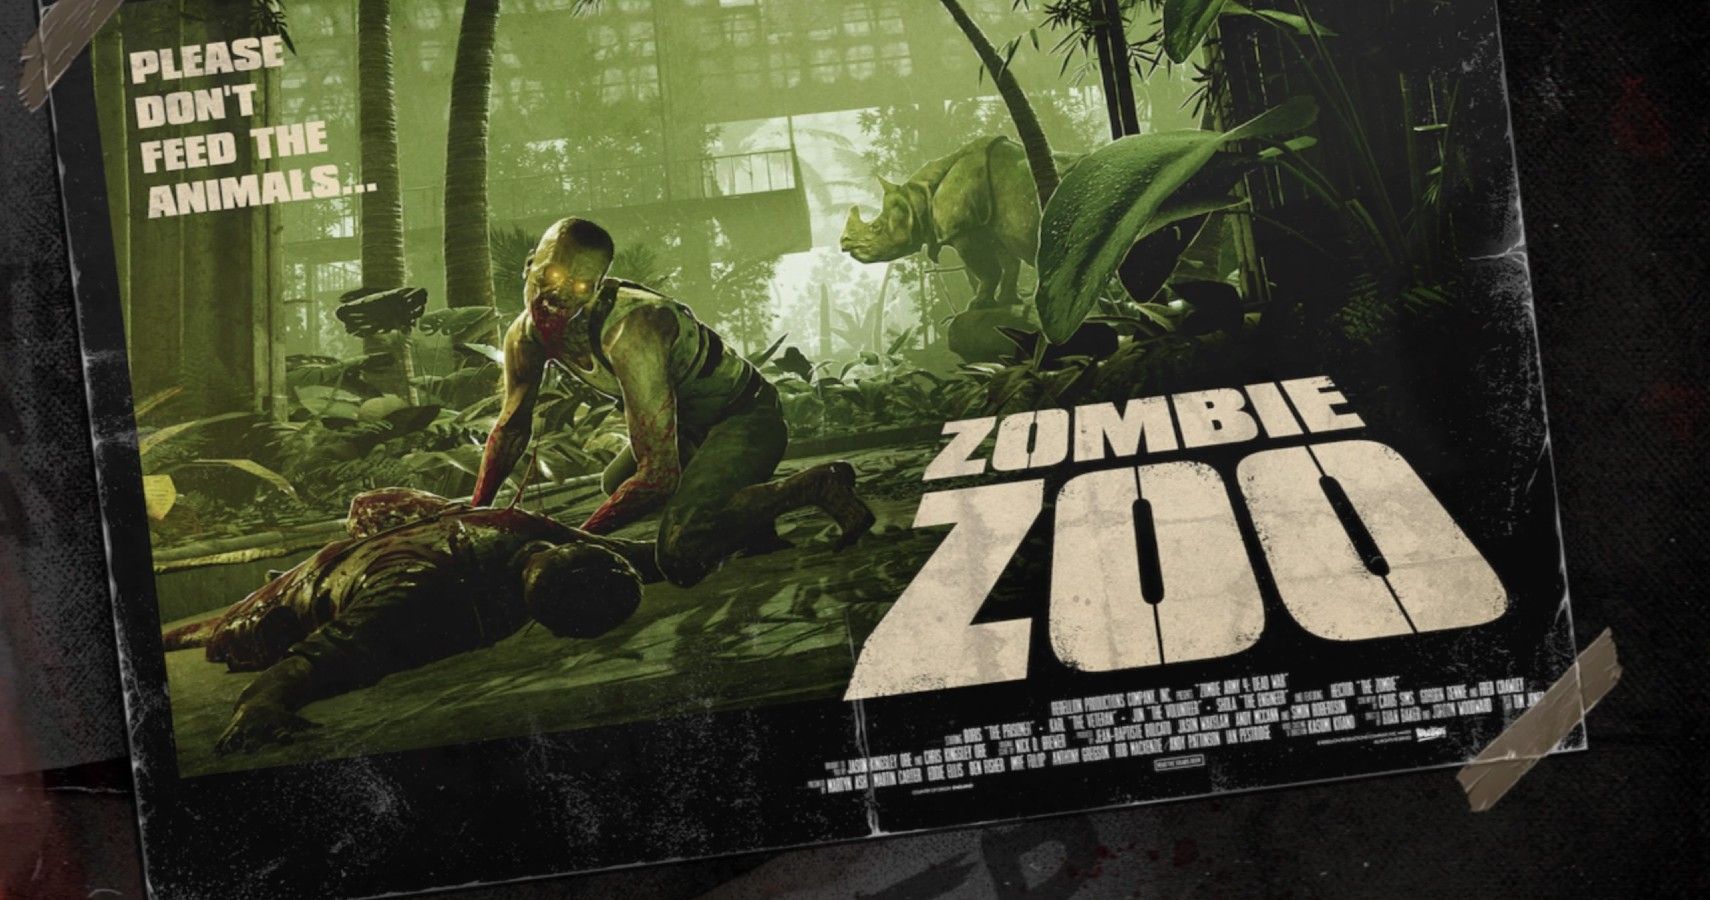 Zombie Army 4 Zombie Zoo